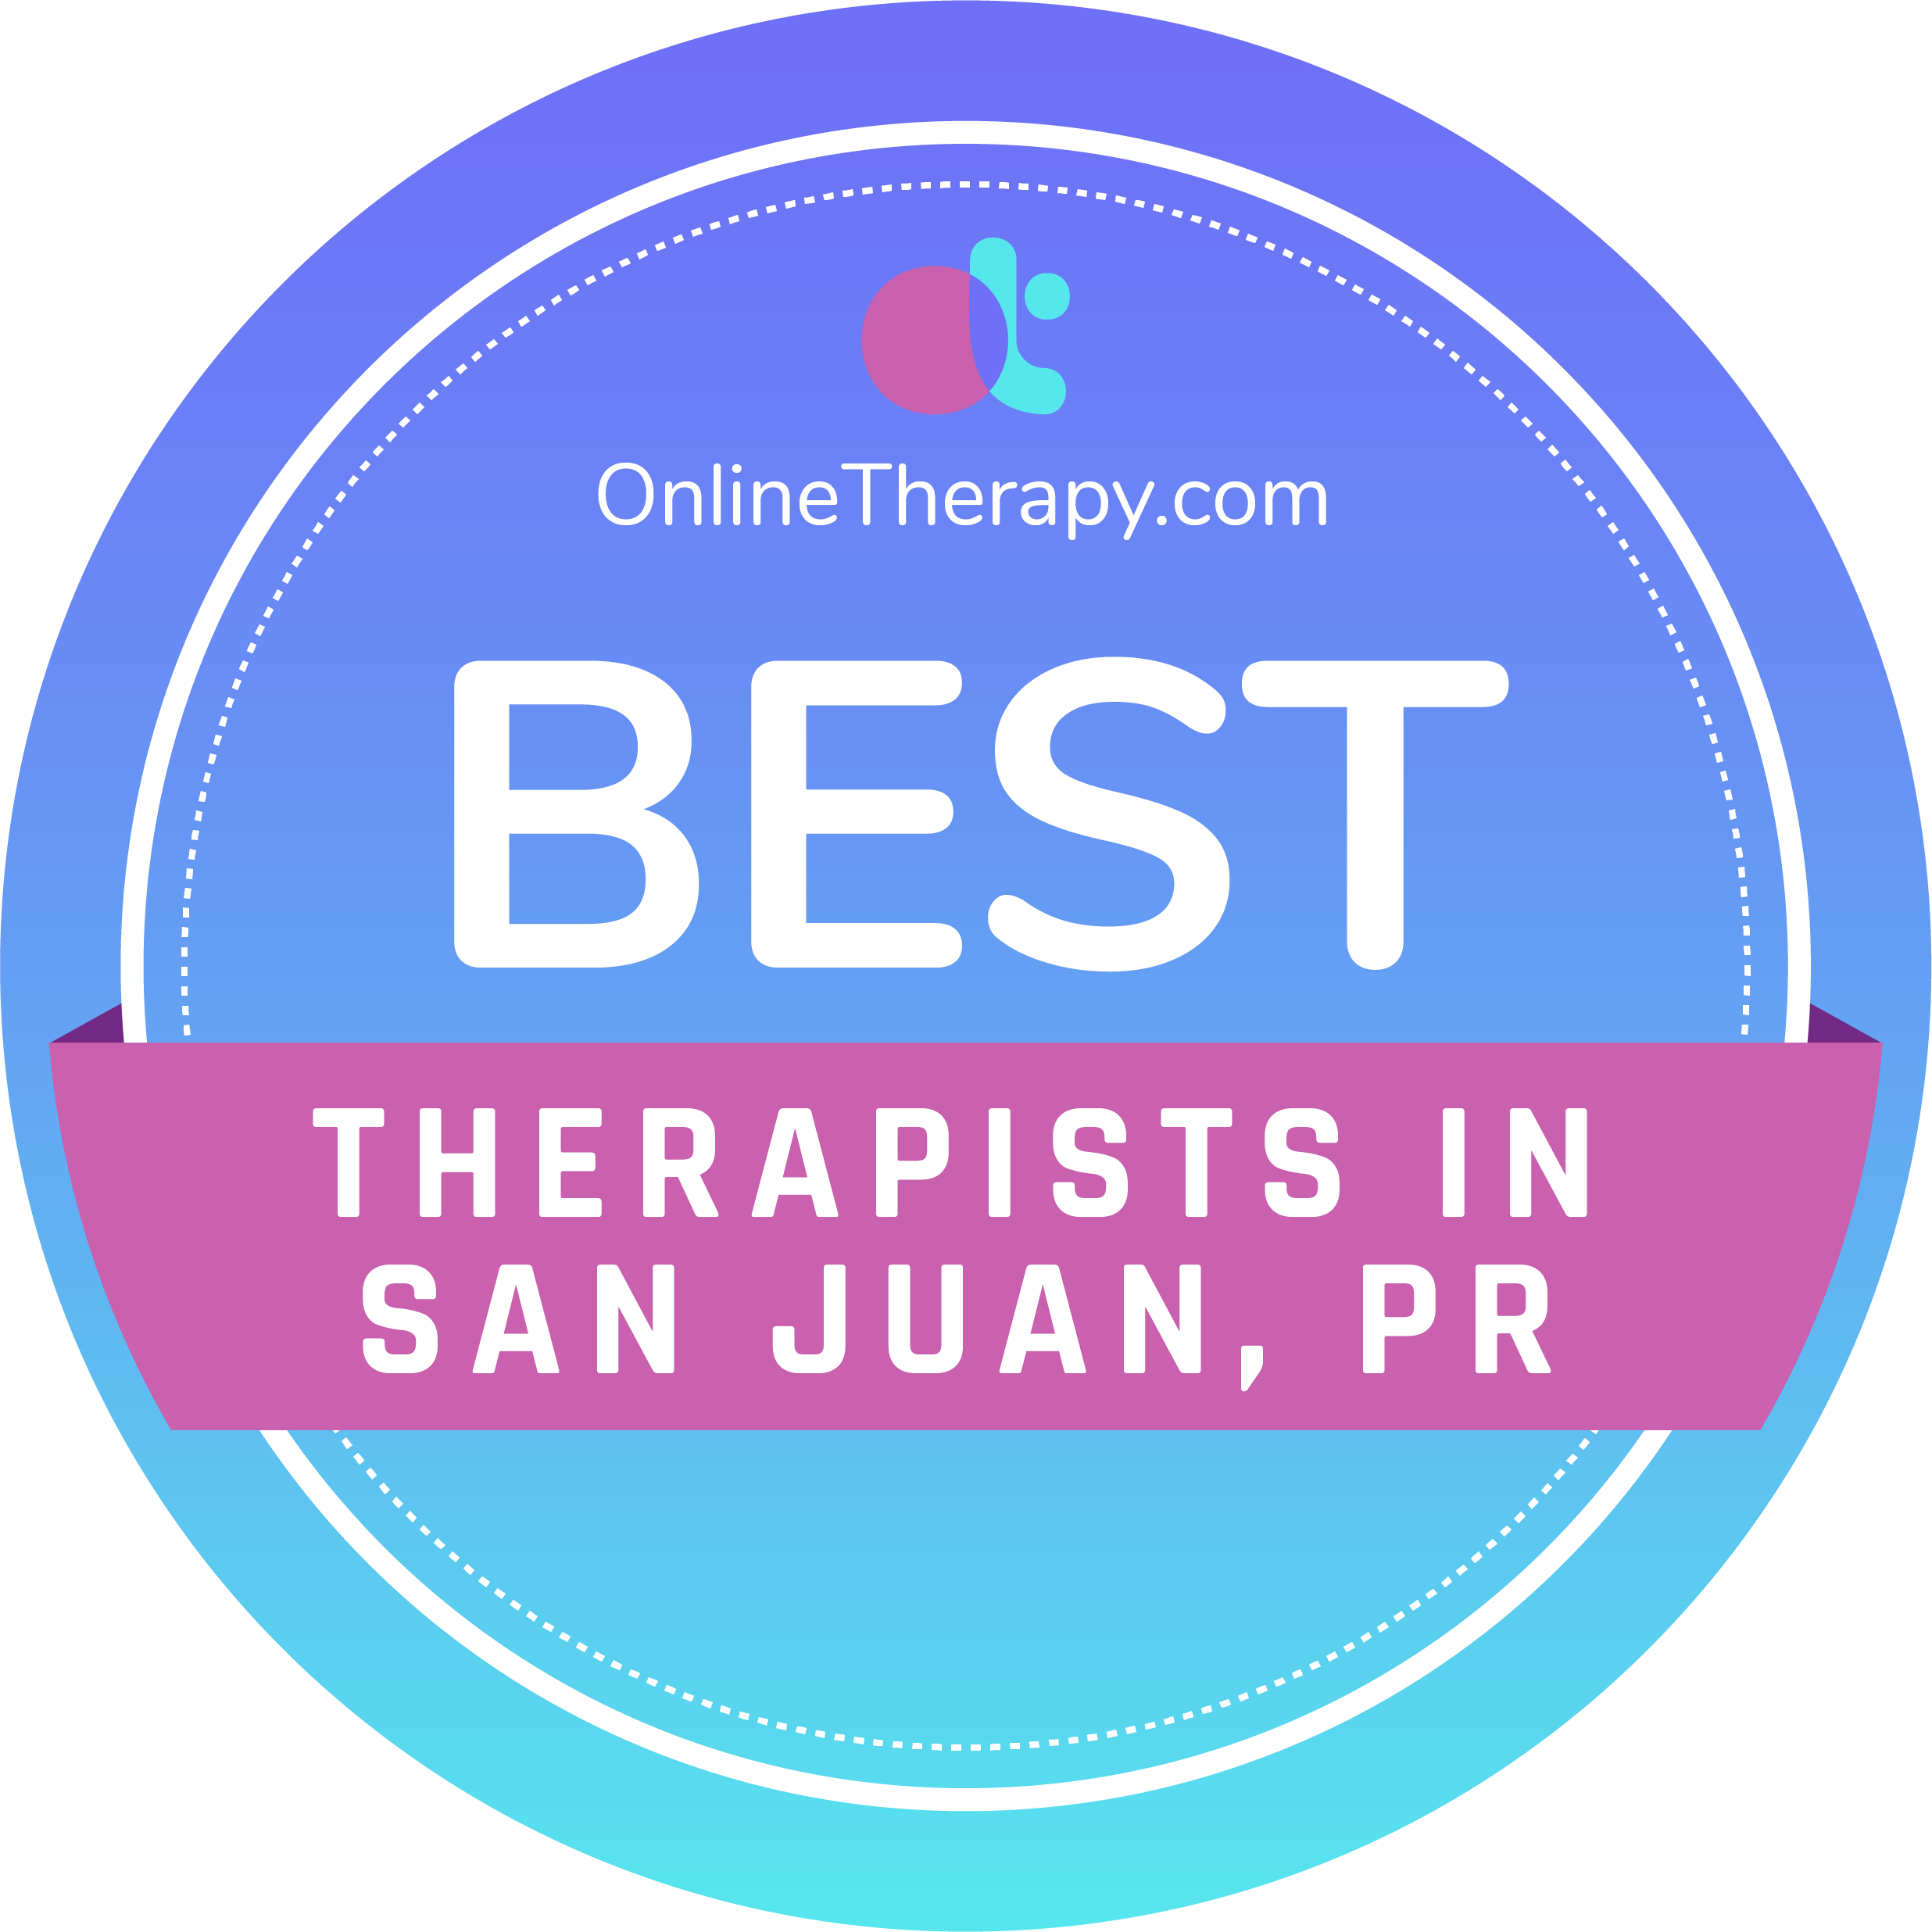 Therapists in SAN JUAN, PR Badge